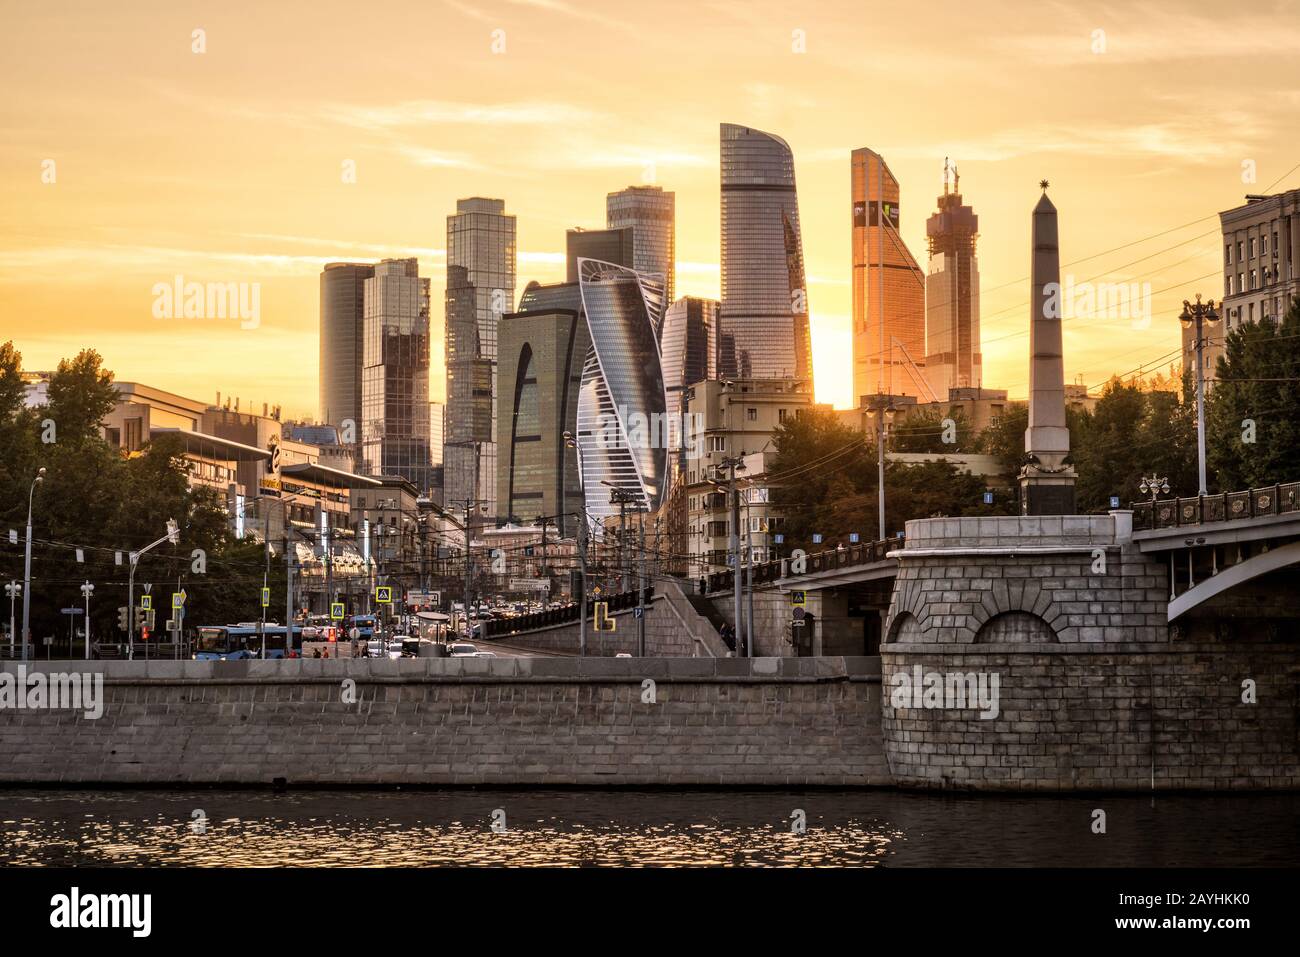 Moskau - 27. August 2018: Sonniger Blick auf Moskau mit modernen Wolkenkratzern von Moskau-Stadt bei Sonnenuntergang, Russland. Kiewskaja Bezirk Moskau im Sommer Evenin Stockfoto